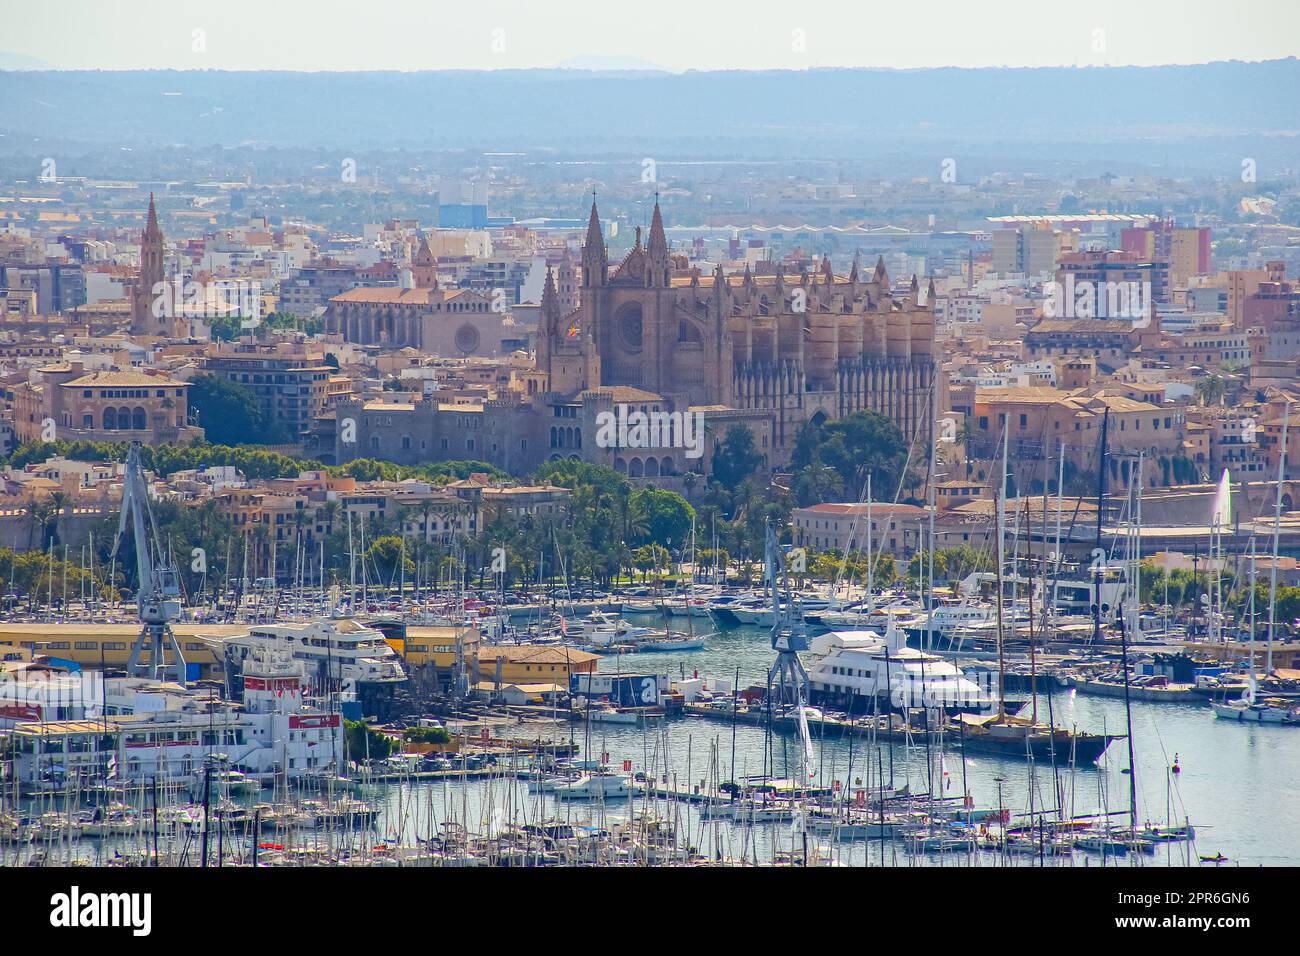 Vue aérienne du port de Palma de Majorque dans les Îles Baléares avec la Seu, la cathédrale gothique médiévale de Majorque dépassant au-dessus de la M Foto Stock